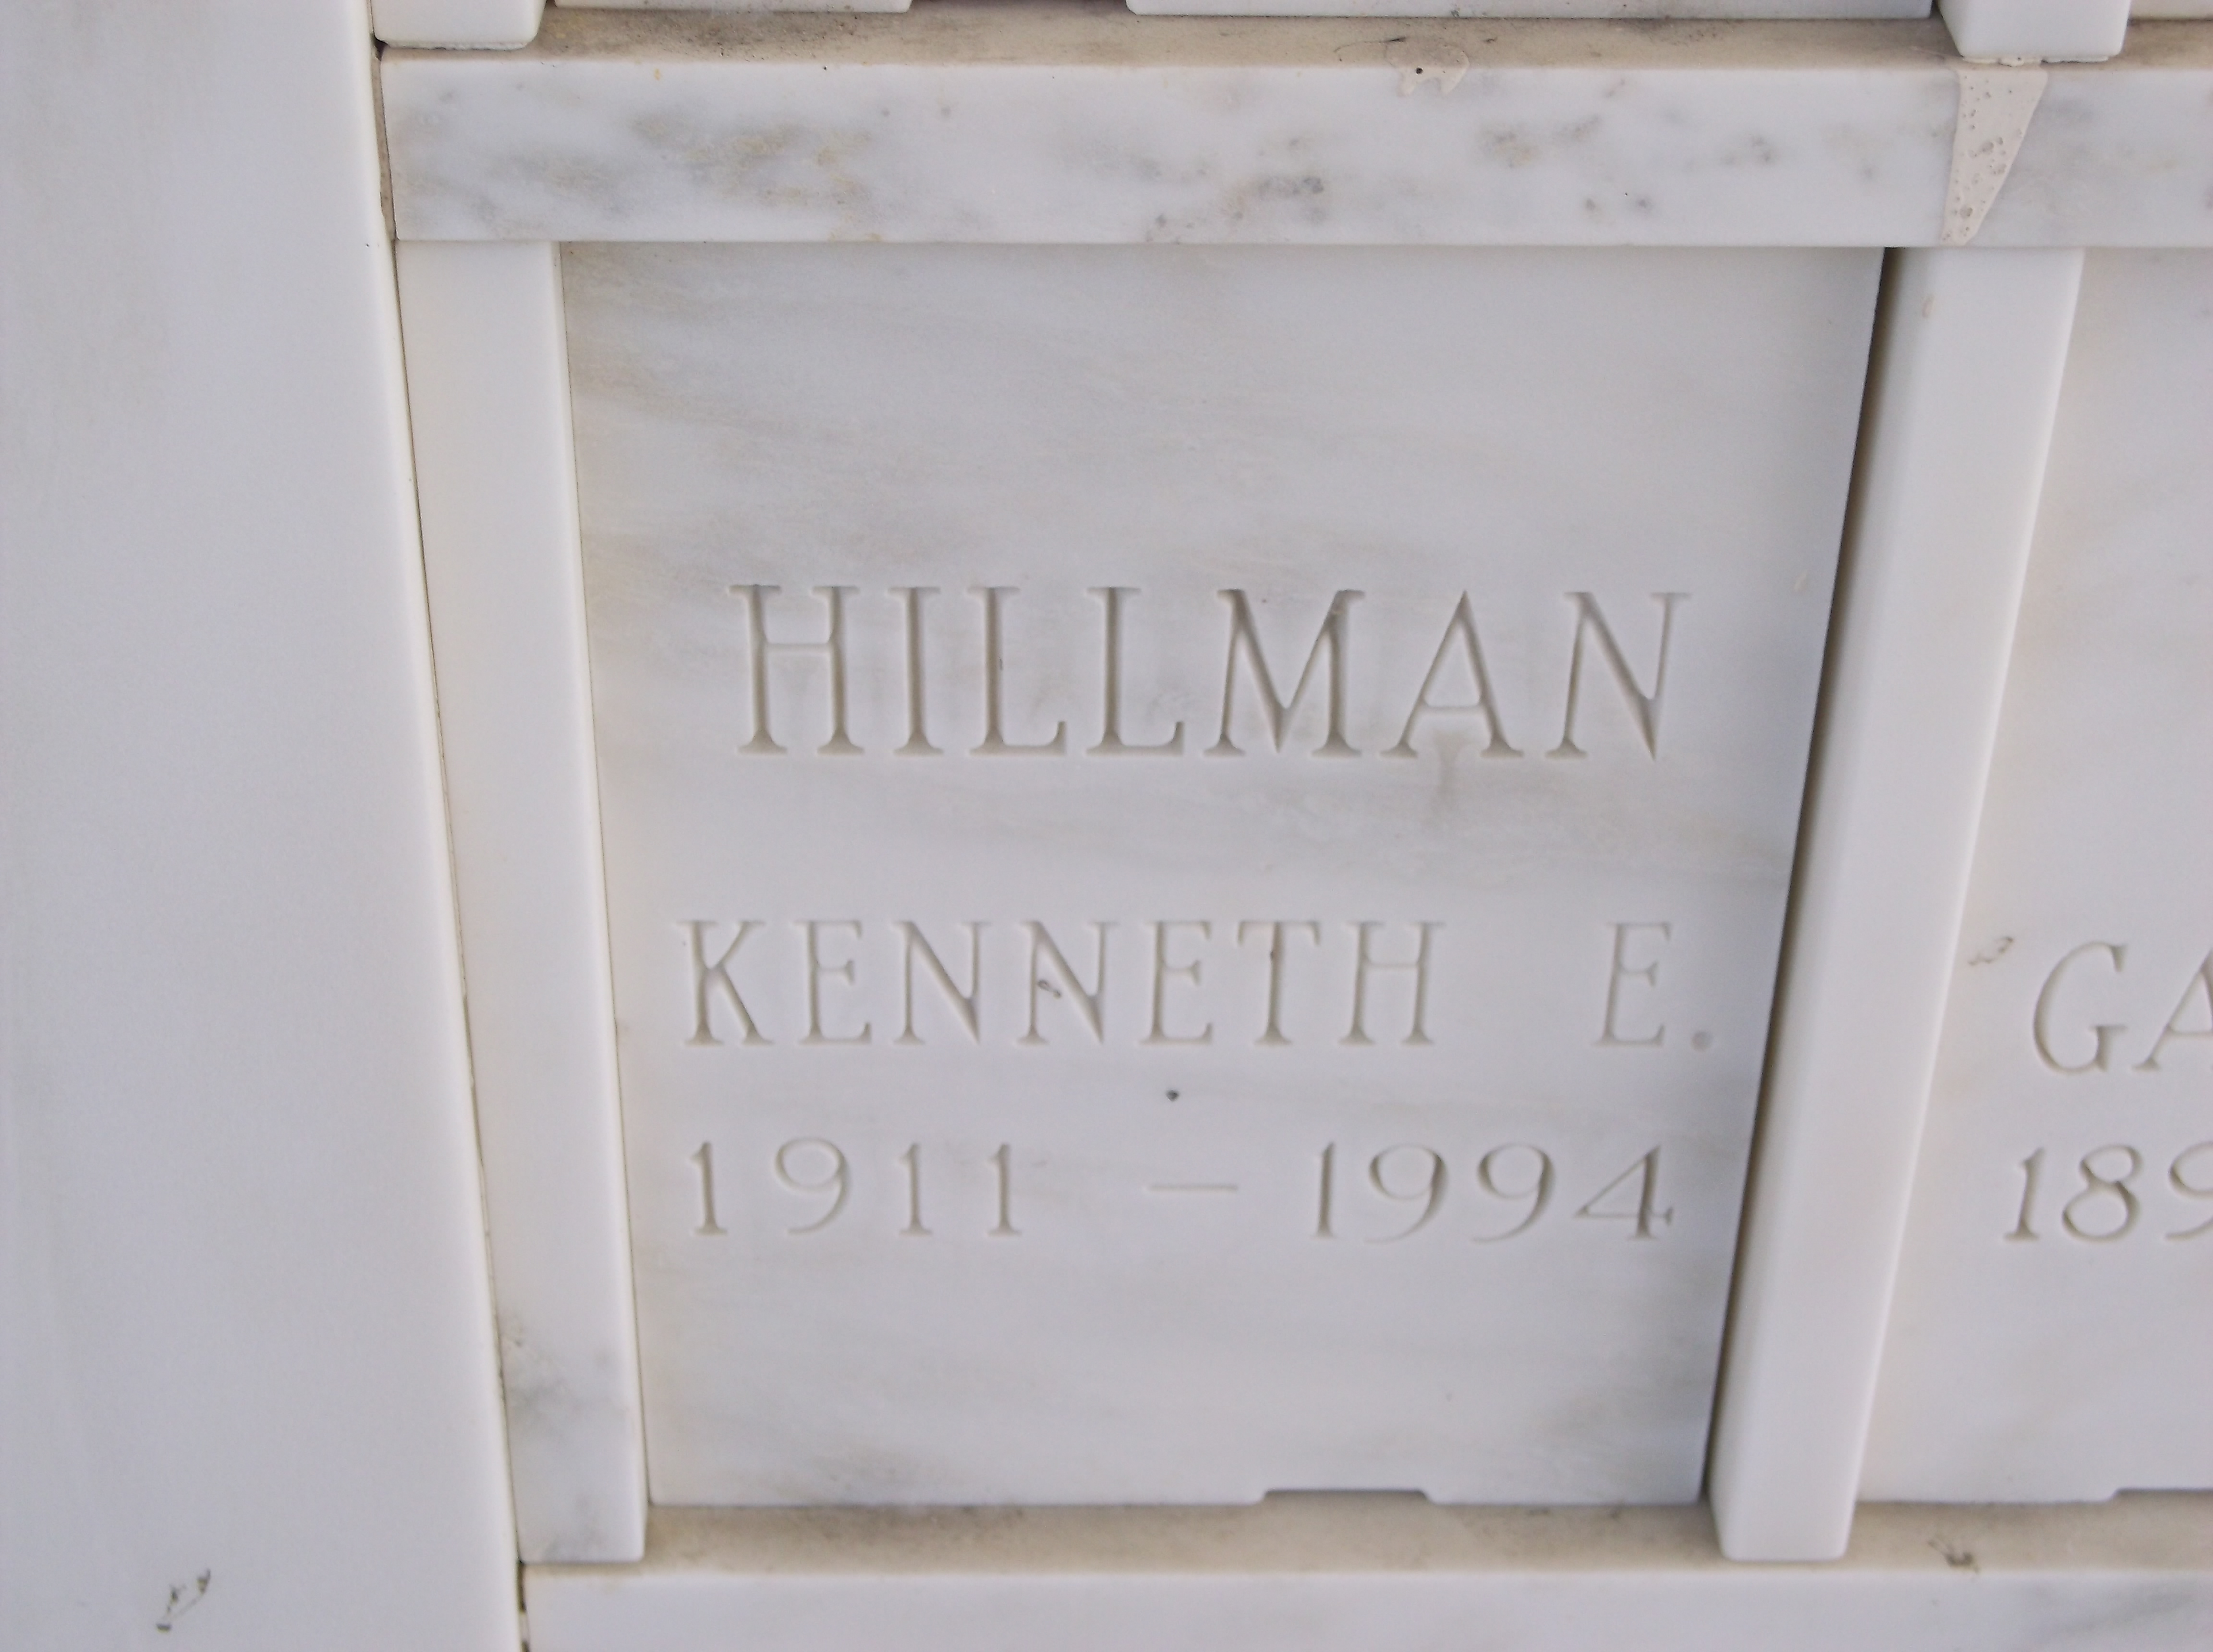 Kenneth E Hillman